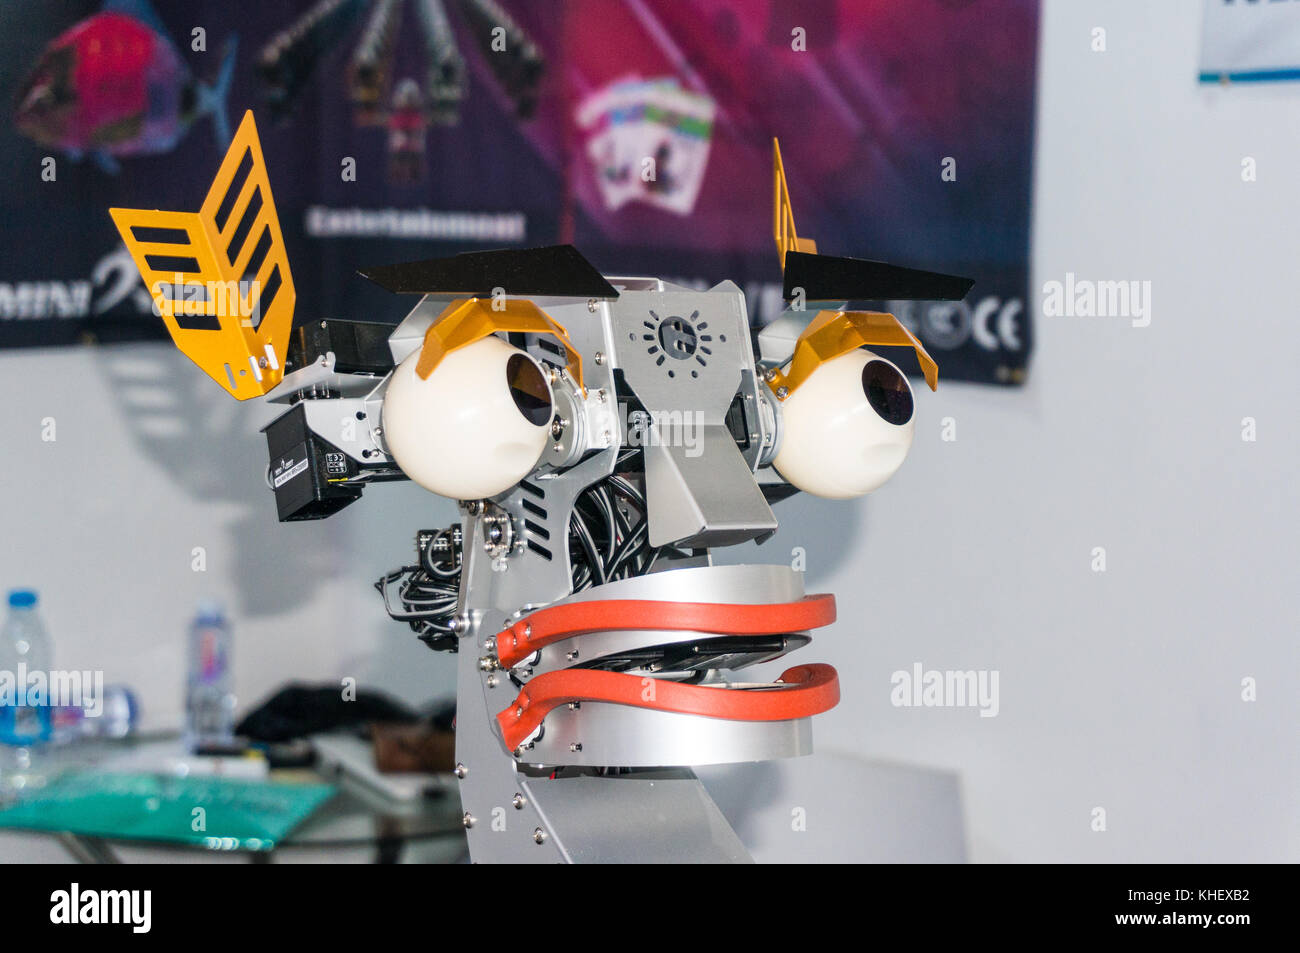 Gracioso robot coreano minirobot enfrentan las expresiones faciales en China hi-tech fair en Shenzhen, conocido como 'silicon valley' de China, Shenzhen, China. Foto de stock